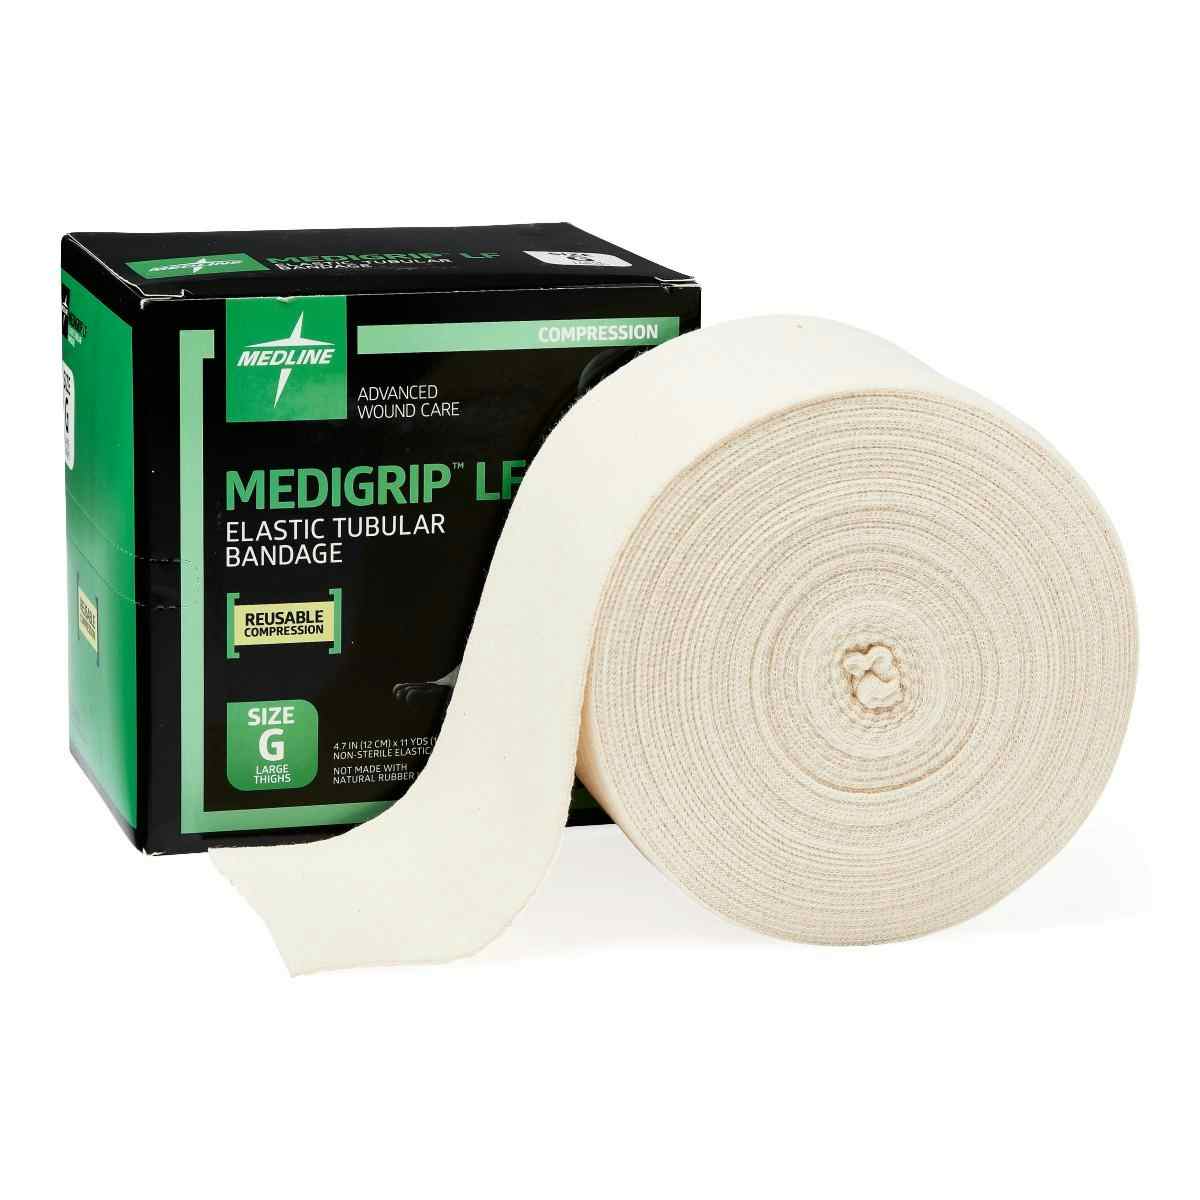 Medline Medigrip Latex Free Elastic Tubular Bandages, MSC9506LF, Size G: 4-3/4" W (12.07 cm) X 11 yd. - 1 Roll